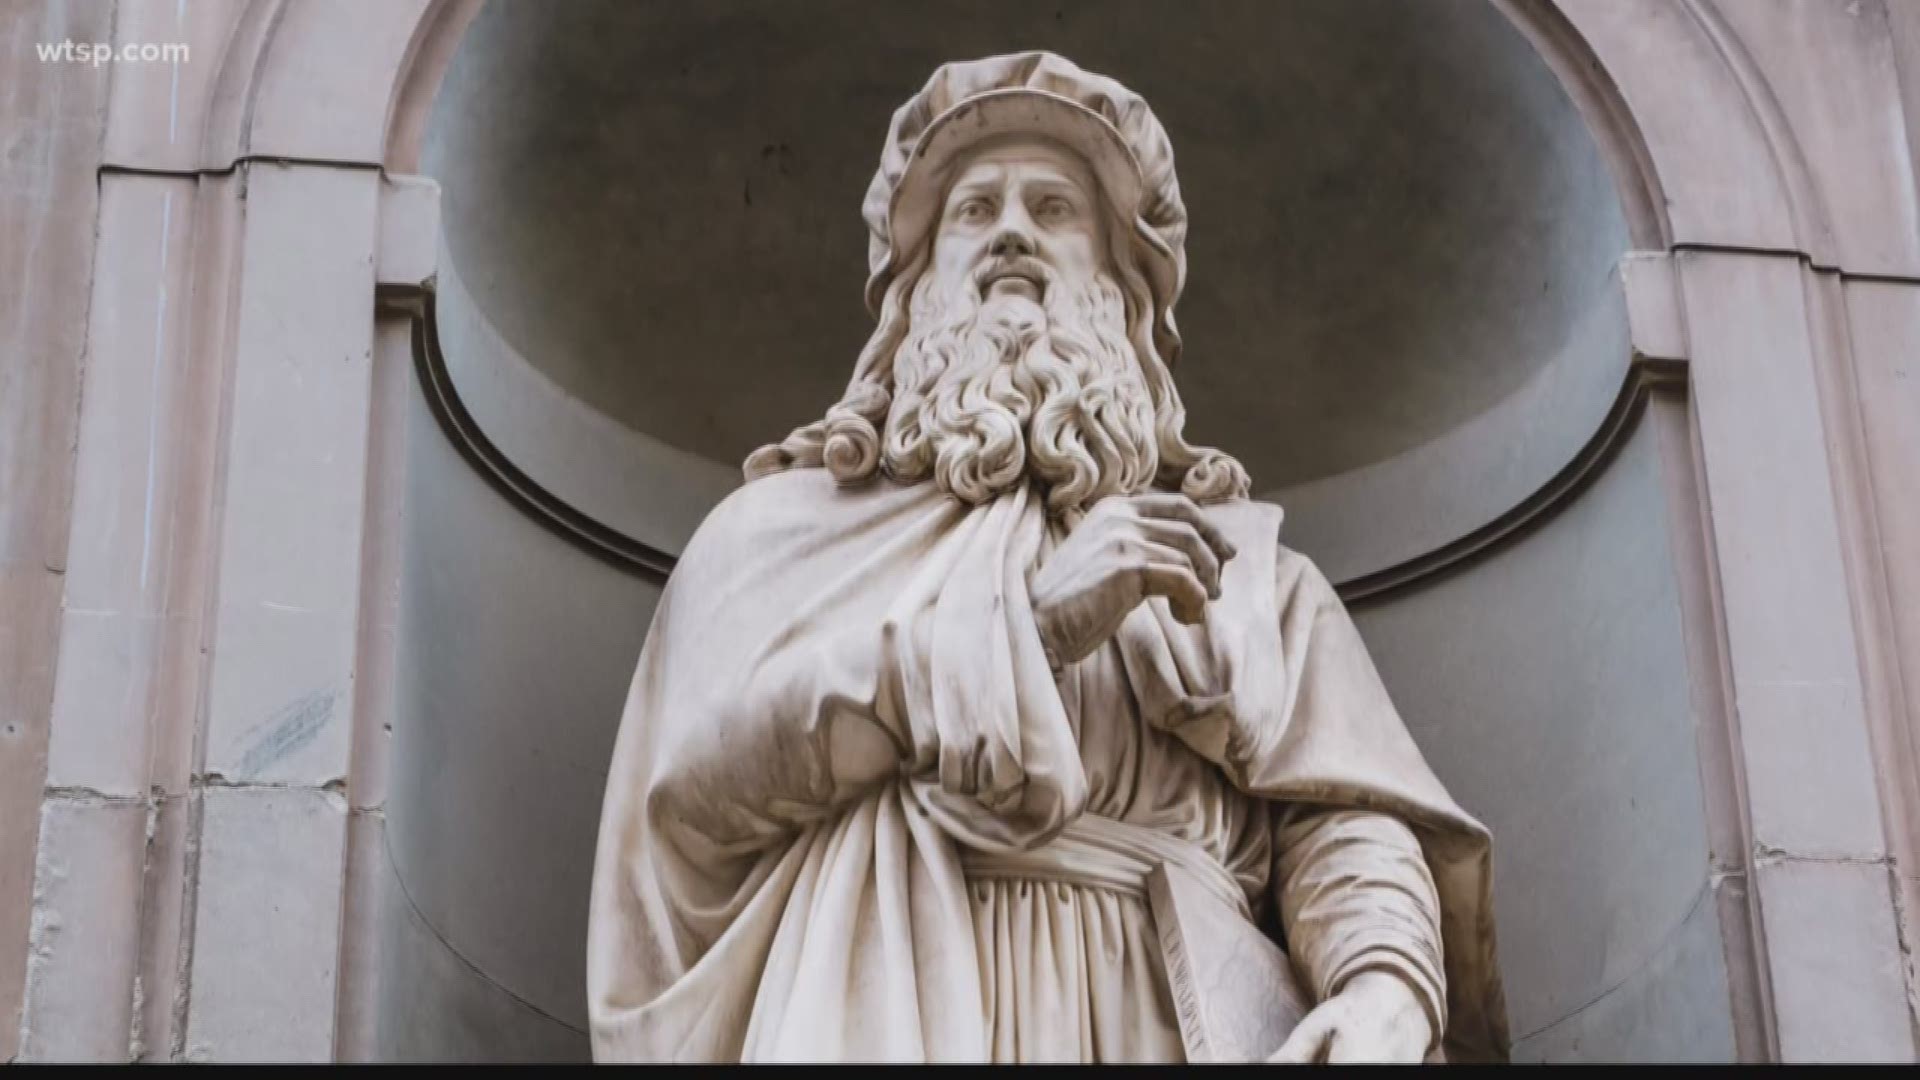 Leonardo da Vinci died on May 2, 1519, in France.